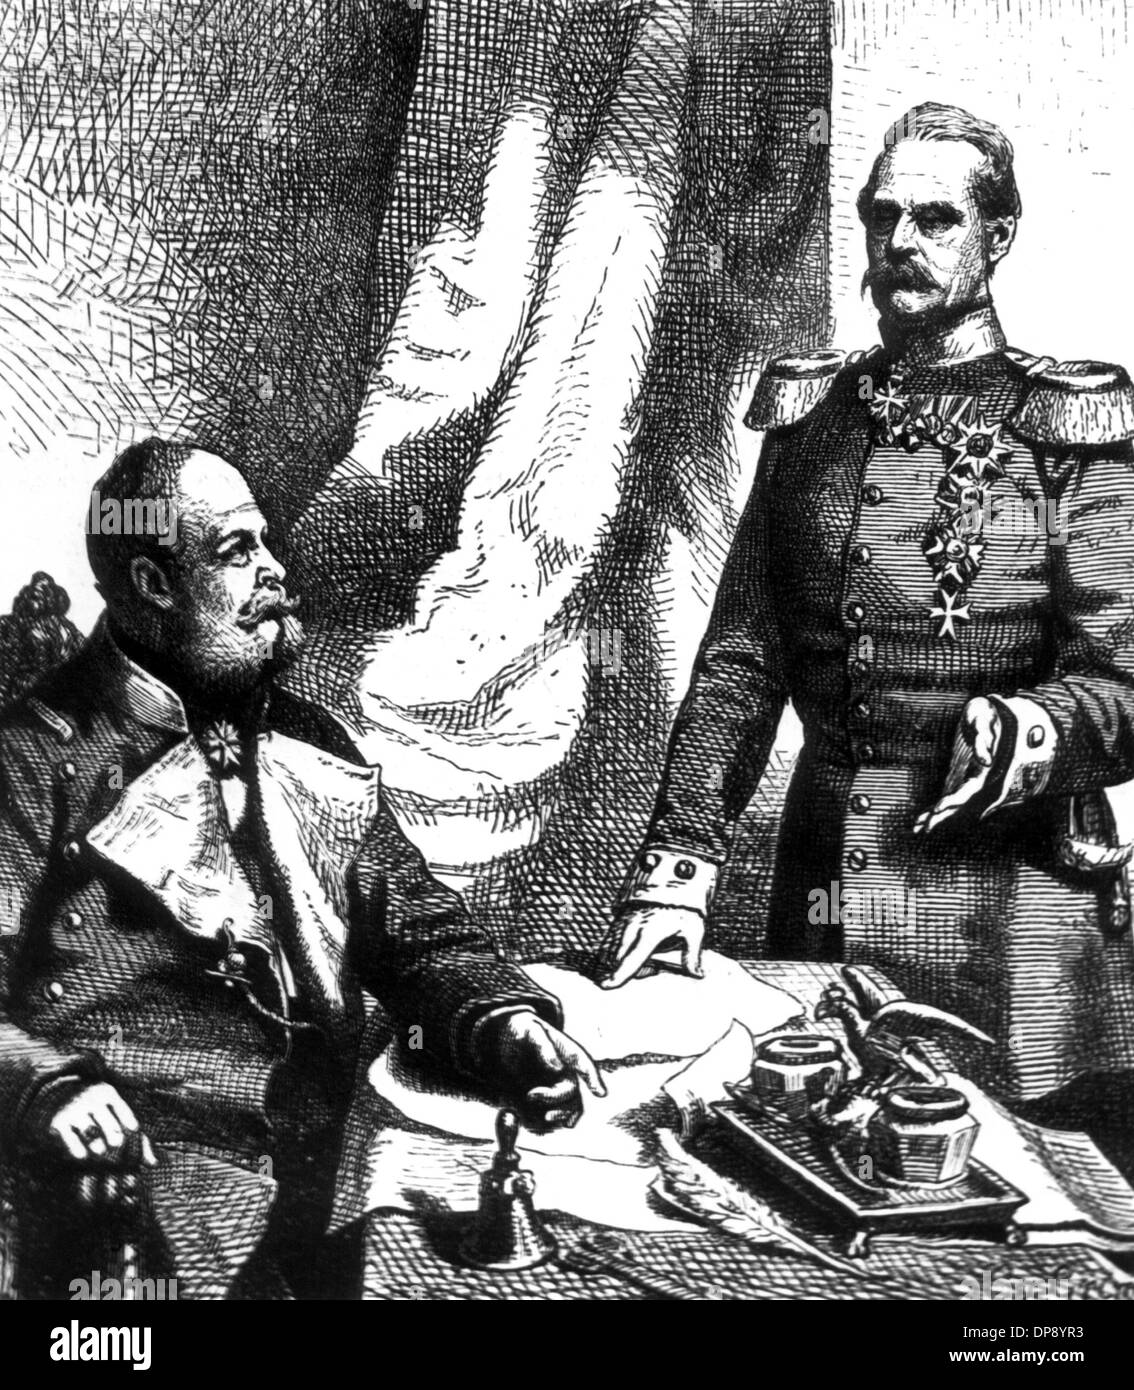 Général prussien maréchal et ministre de la guerre Albrecht von Roon donne un rapport à l'empereur Guillaume I. dans un style contemporain l'inscription. Il est né le 30 avril en 1803 à Pleushagen et est mort le 23 février en 1879 à Berlin. Banque D'Images